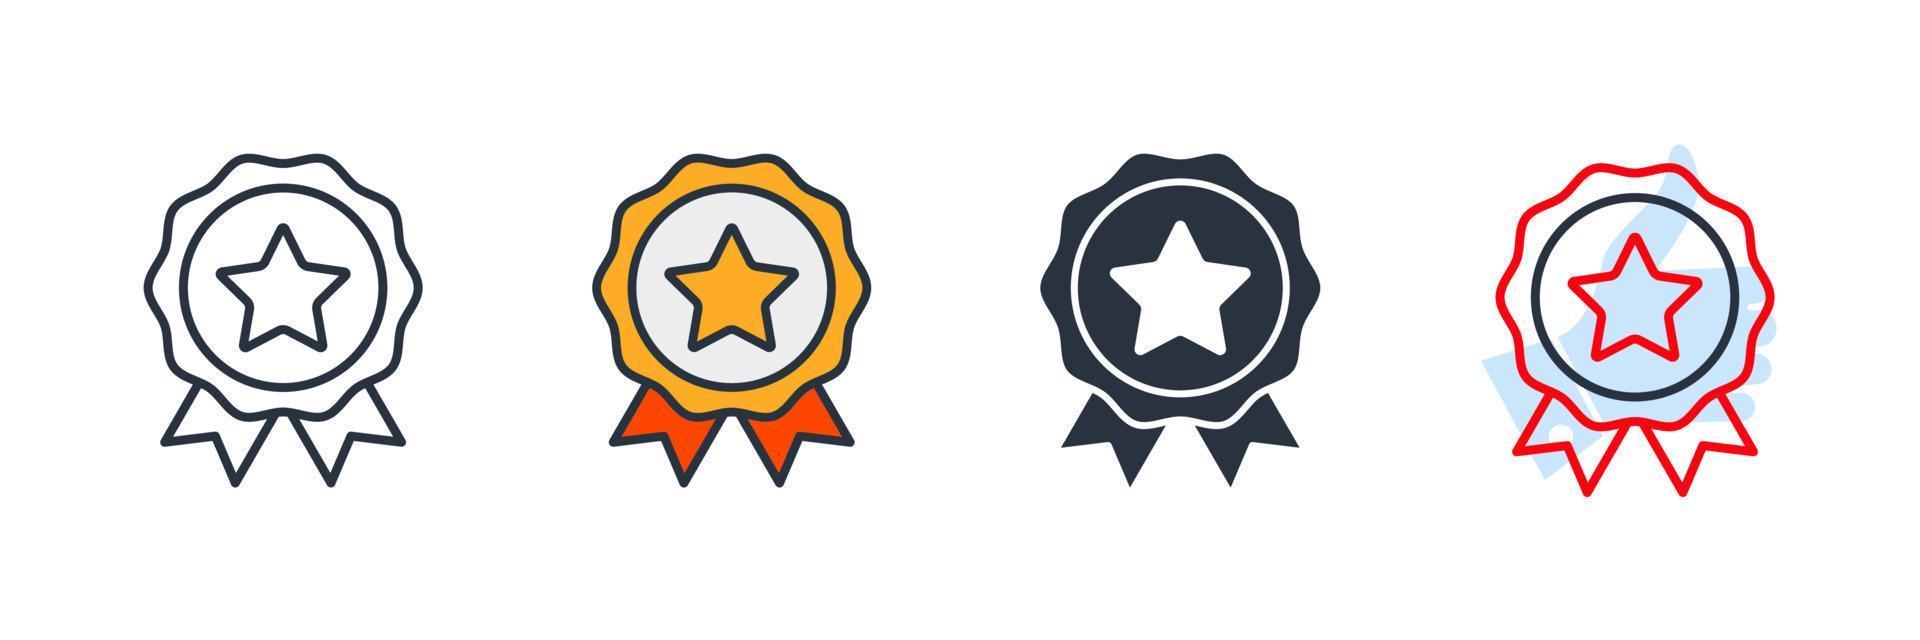 qualità premium. illustrazione vettoriale del logo dell'icona del badge di successo. modello di simbolo di certificato per la raccolta di grafica e web design